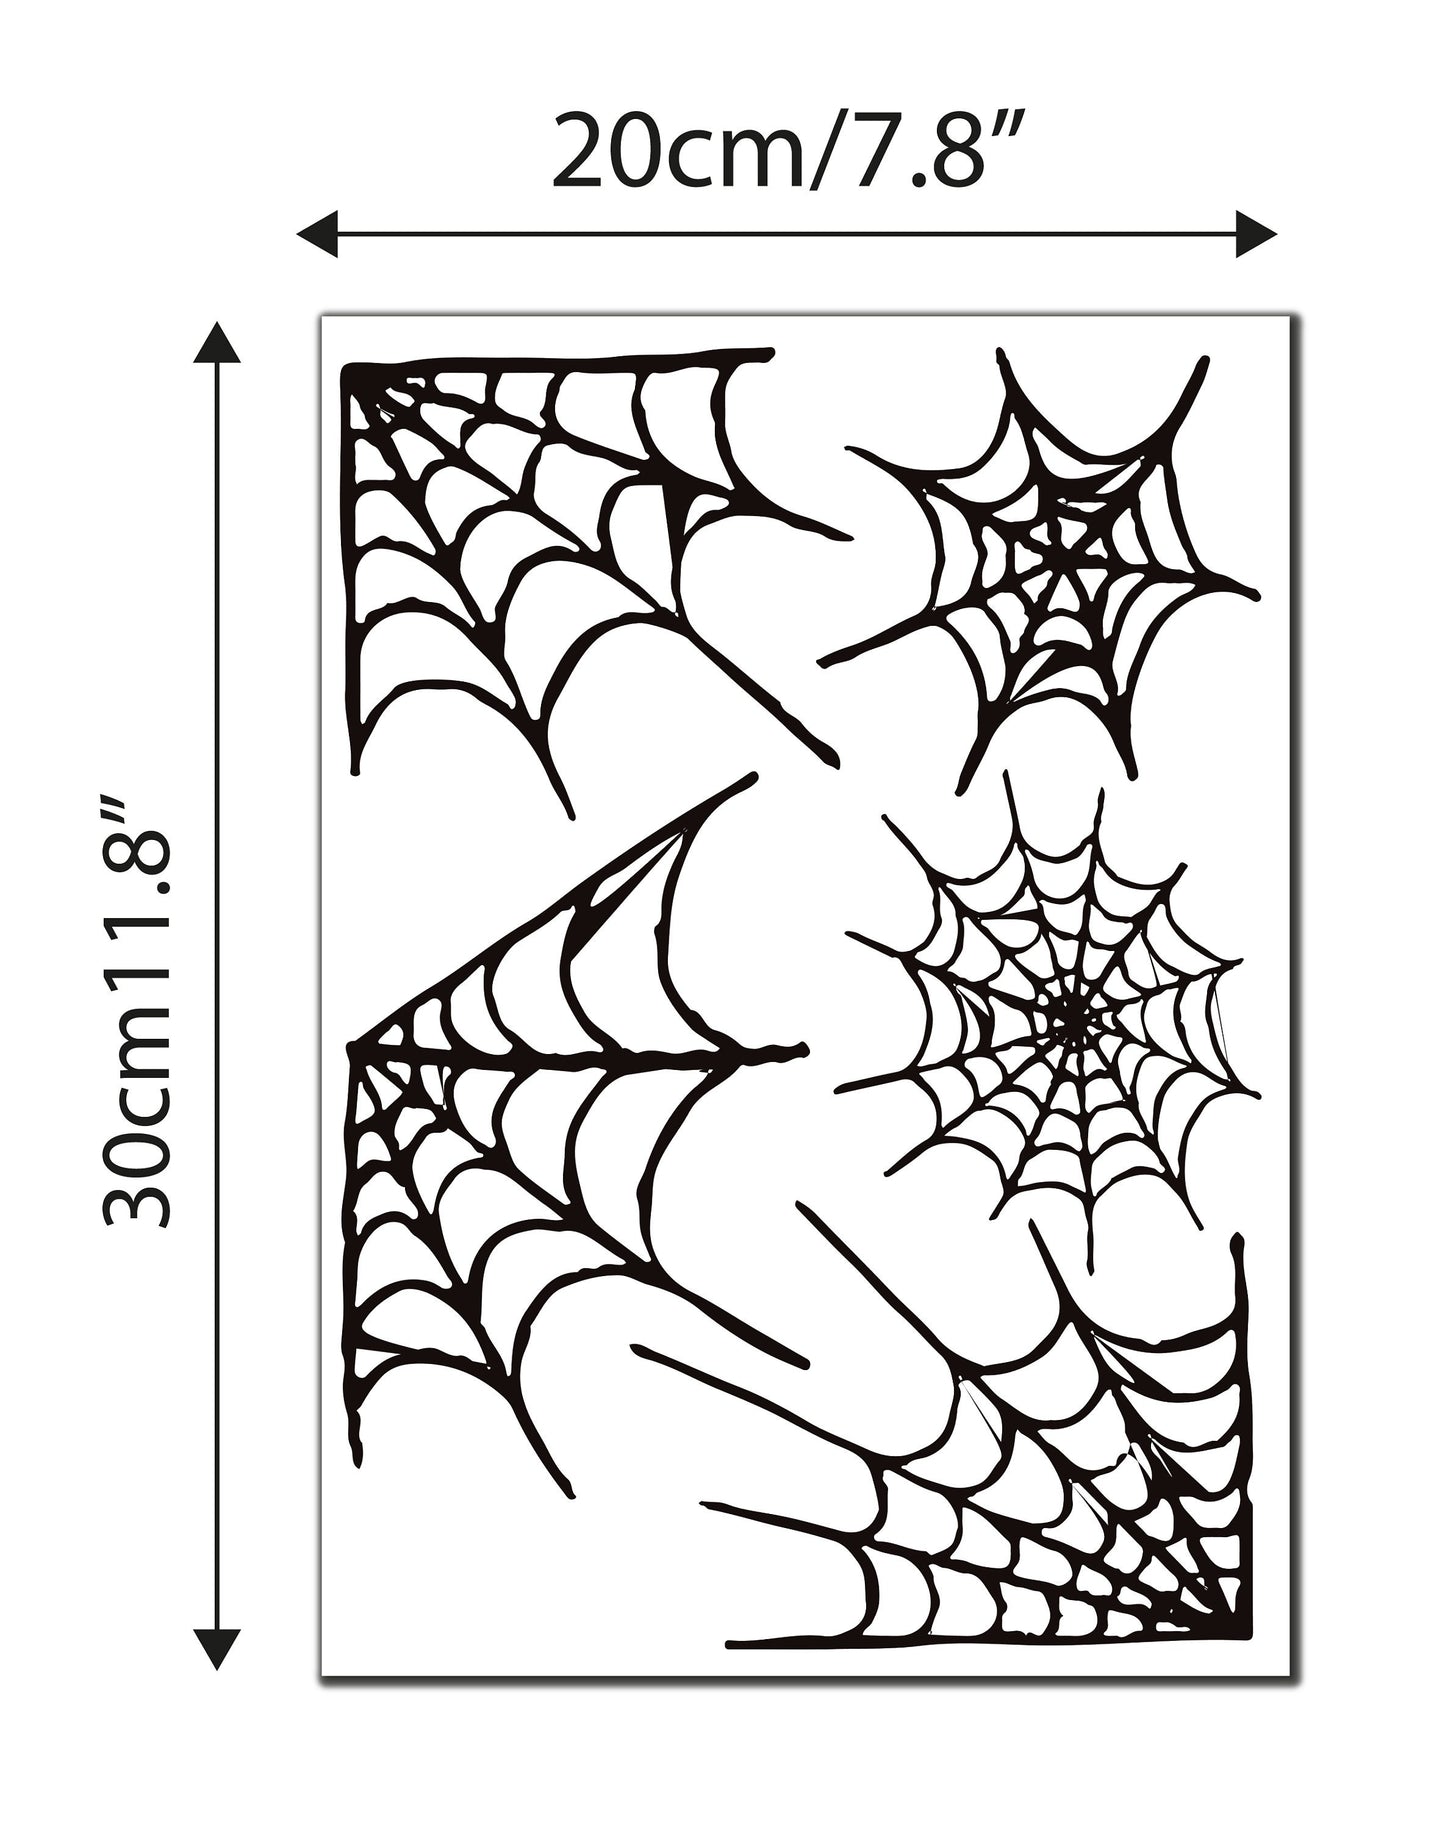 Spider Webs Halloween Window Stickers For Kids Cjhildren Home, Halloween Decorations, Spiderweb Stickers, Spider Web Decals